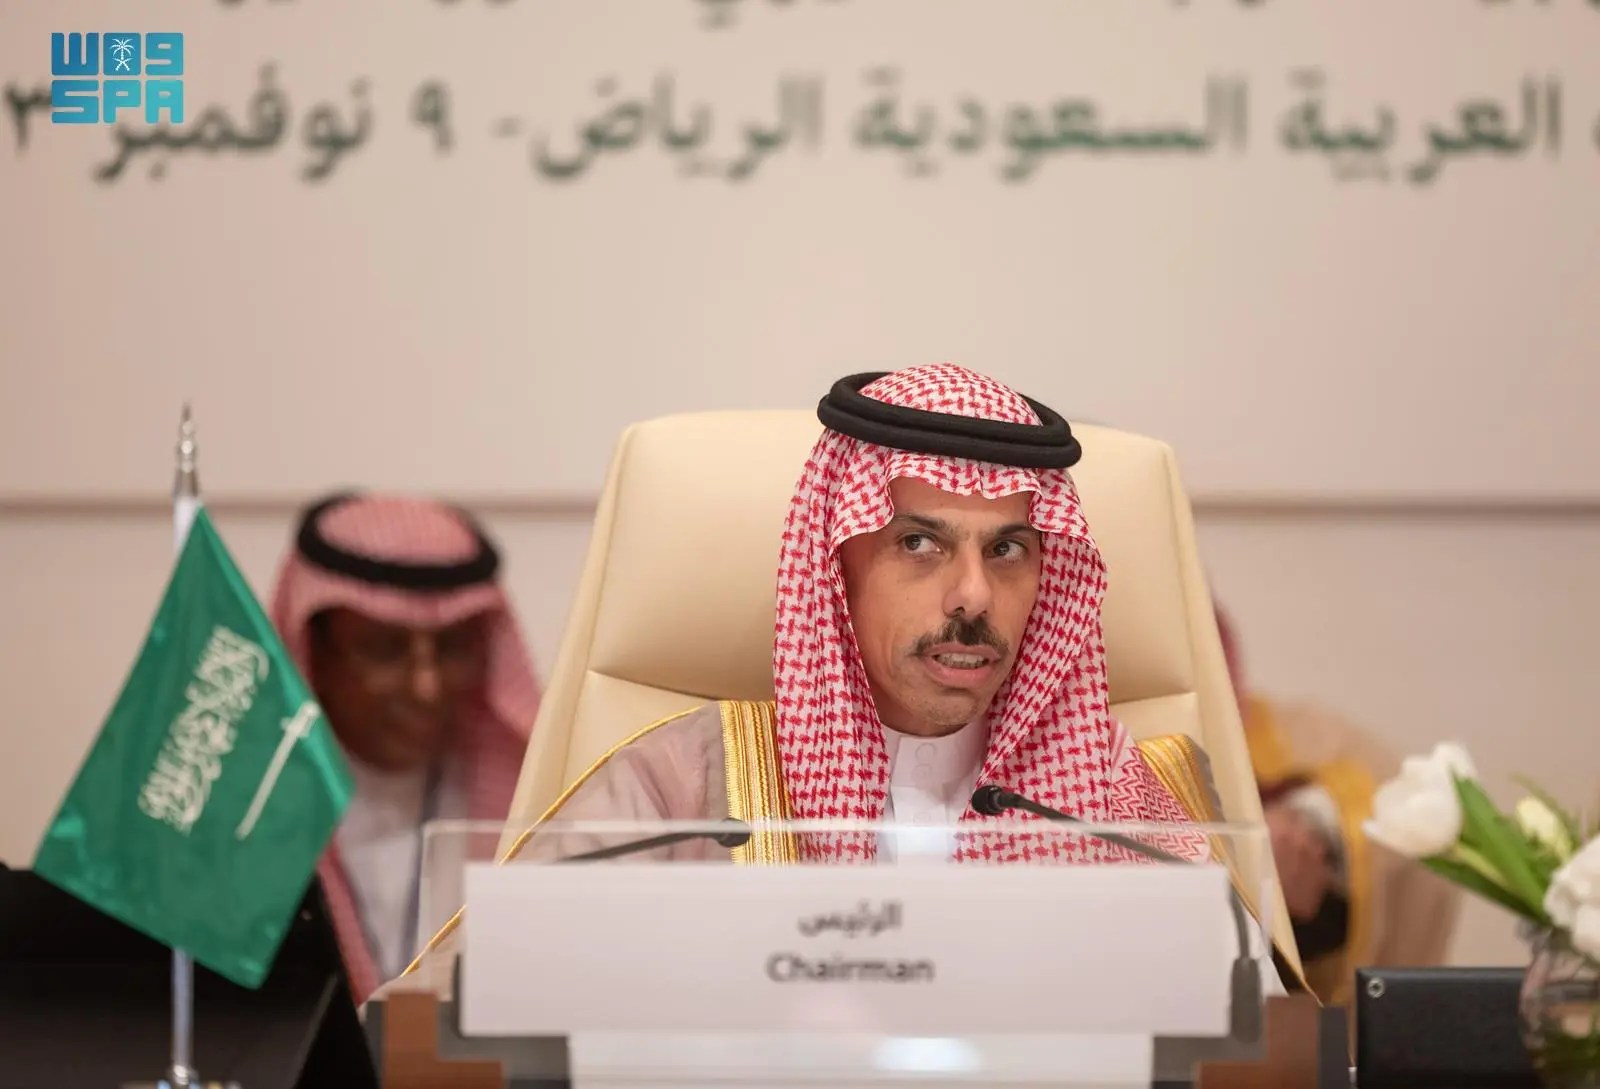 وزير الخارجية يترأس أعمال اجتماع وزراء خارجية العرب التحضيري للدورة غير العادية للقمة العربية